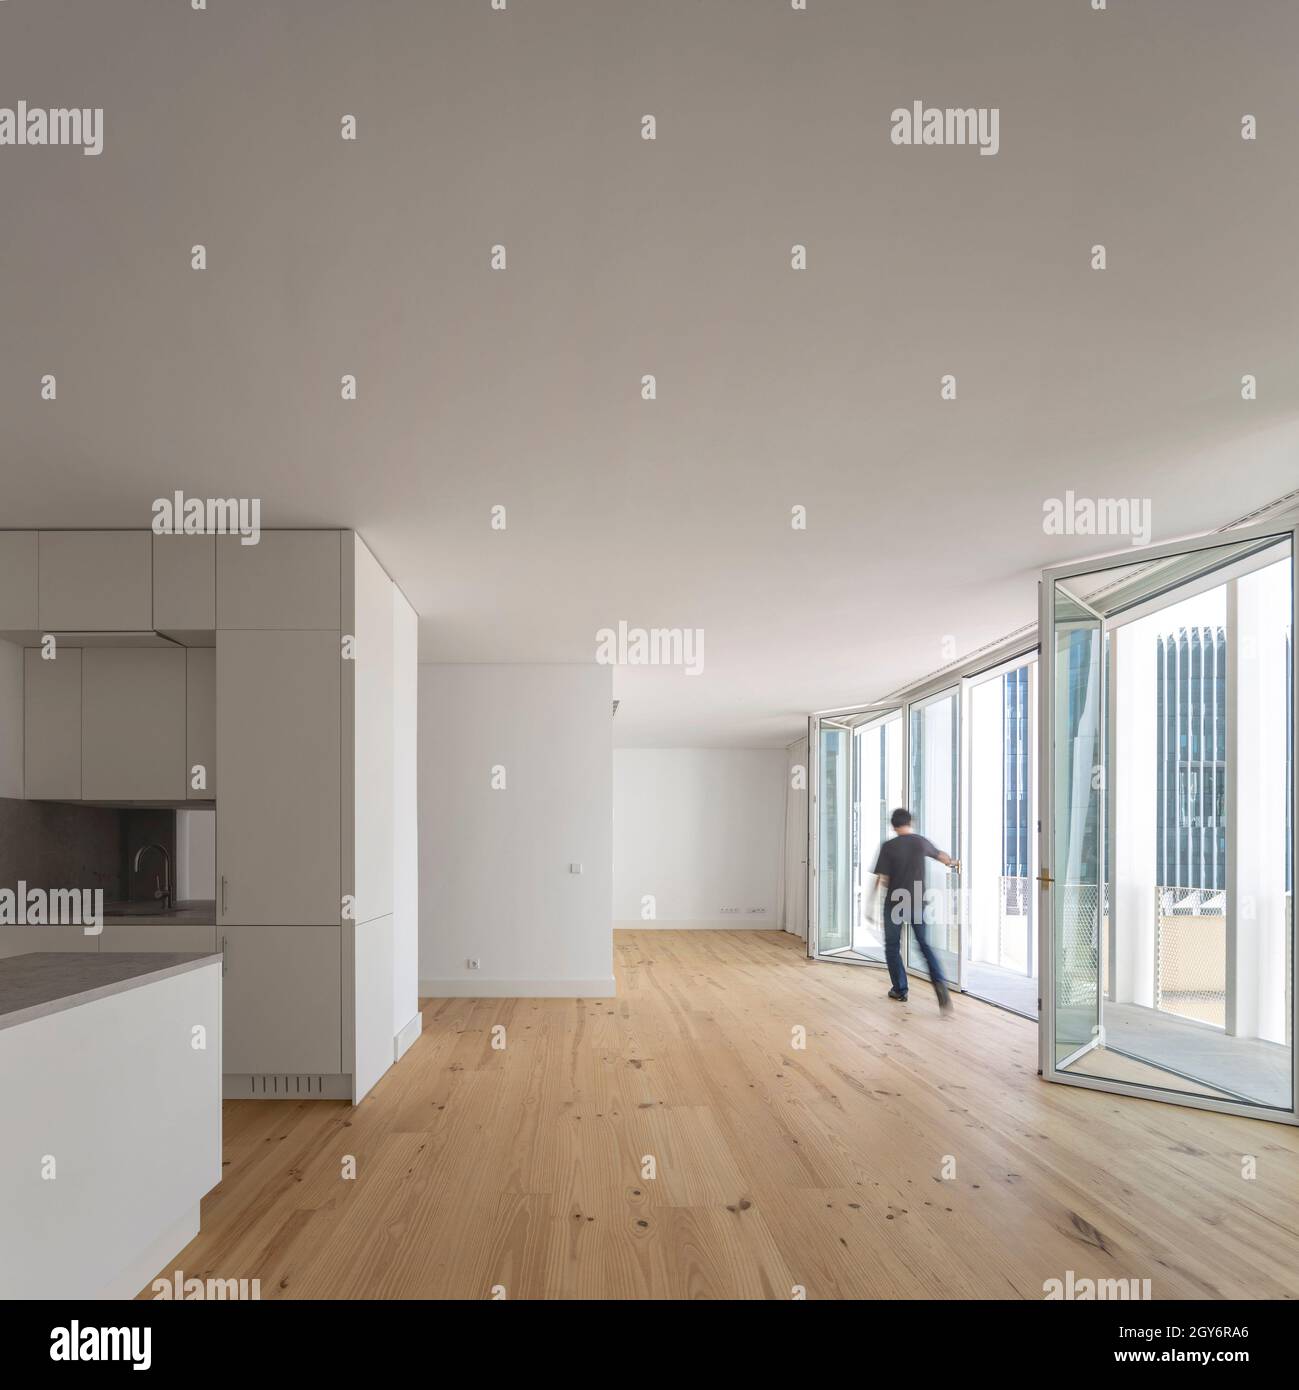 Küche und unmöbliertes Zimmer mit Konzerttüren. Ribeira 11, Lissabon, Portugal. Architekt: Ricardo Carvalho Arquitectos & Associados, 2019. Stockfoto